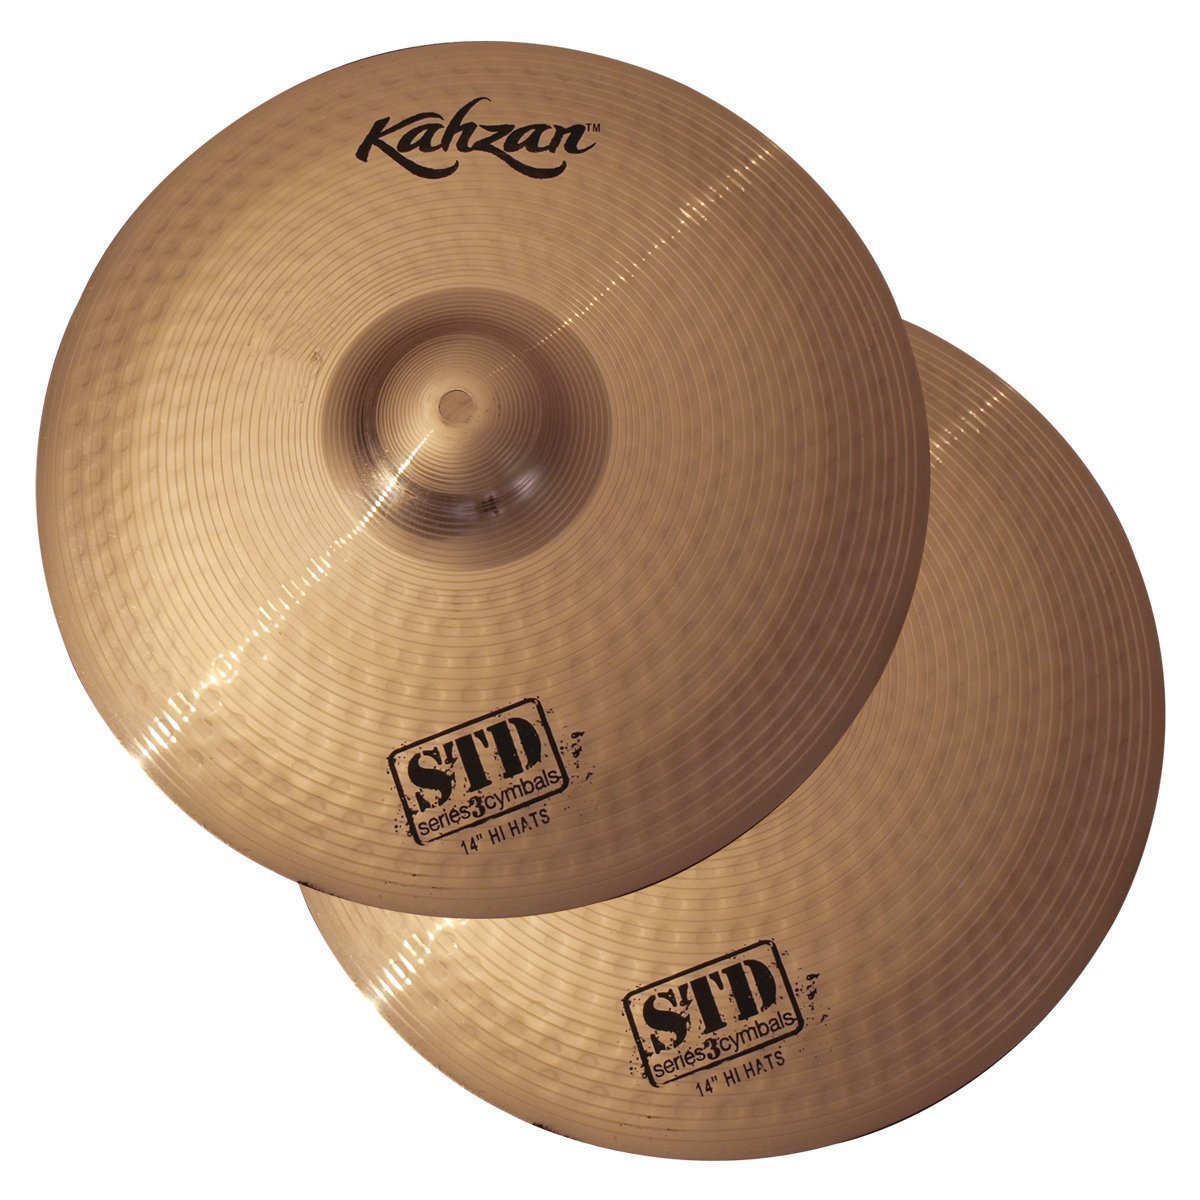 Kahzan 'STD-3 Series' Hi-Hat Cymbals (14")